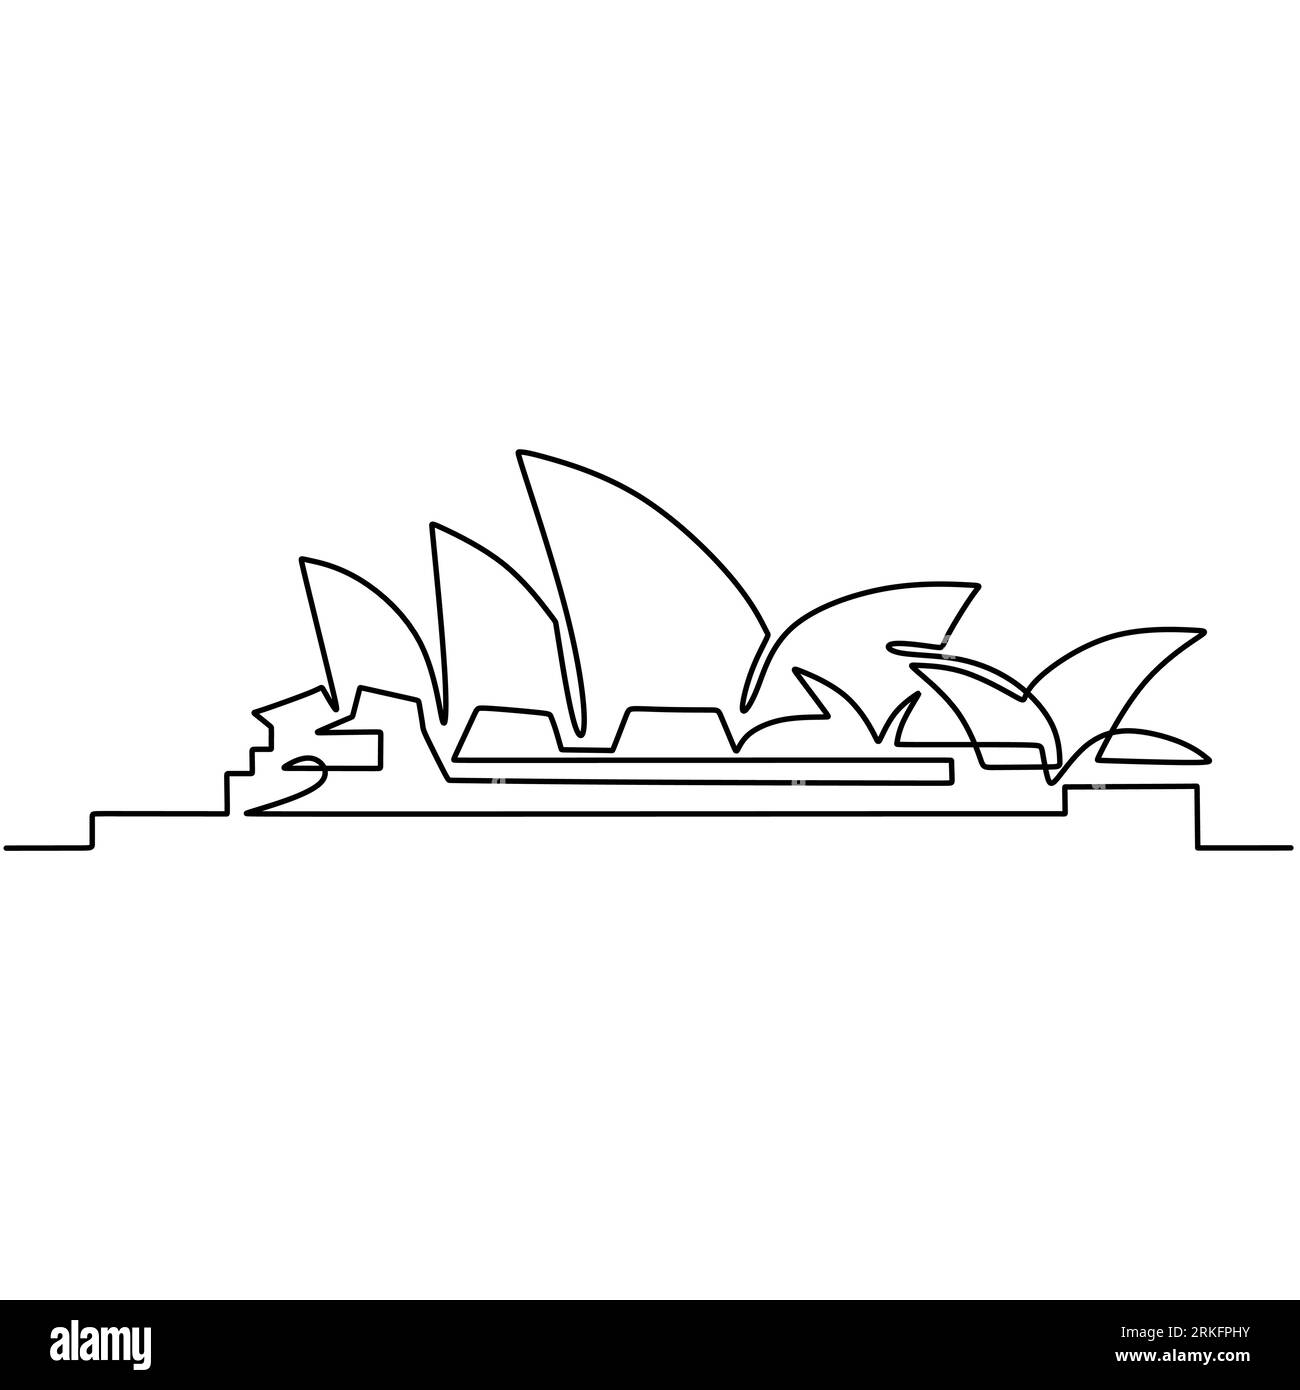 Una linea continua che disegna lo skyline della città di Sydney. L'iconica opera d'arte multisala di Sydney. Illustrazione vettoriale semplice e moderna in stile minimalista Illustrazione Vettoriale